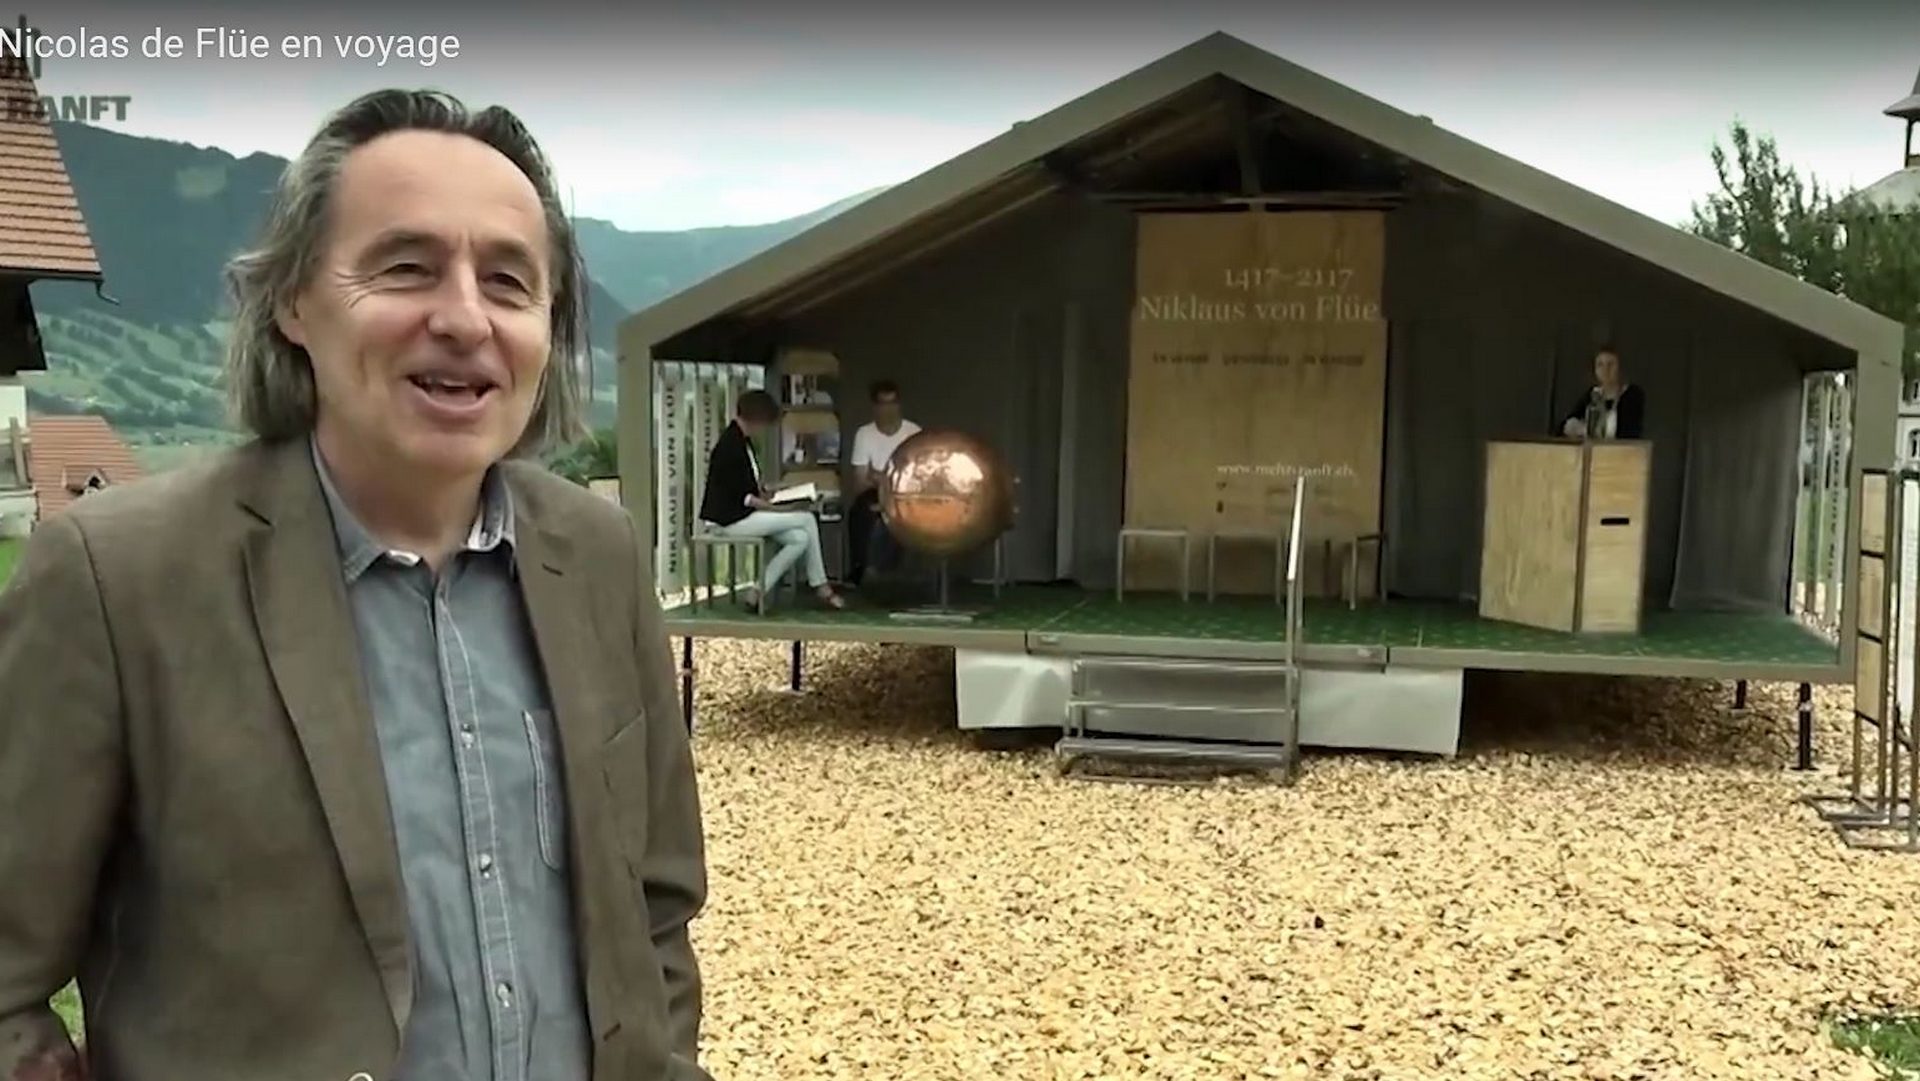 Otto Steiner devant le pavillon mobile 'Nicolas de Flüe en voyage' (capture d'écran Youtube)